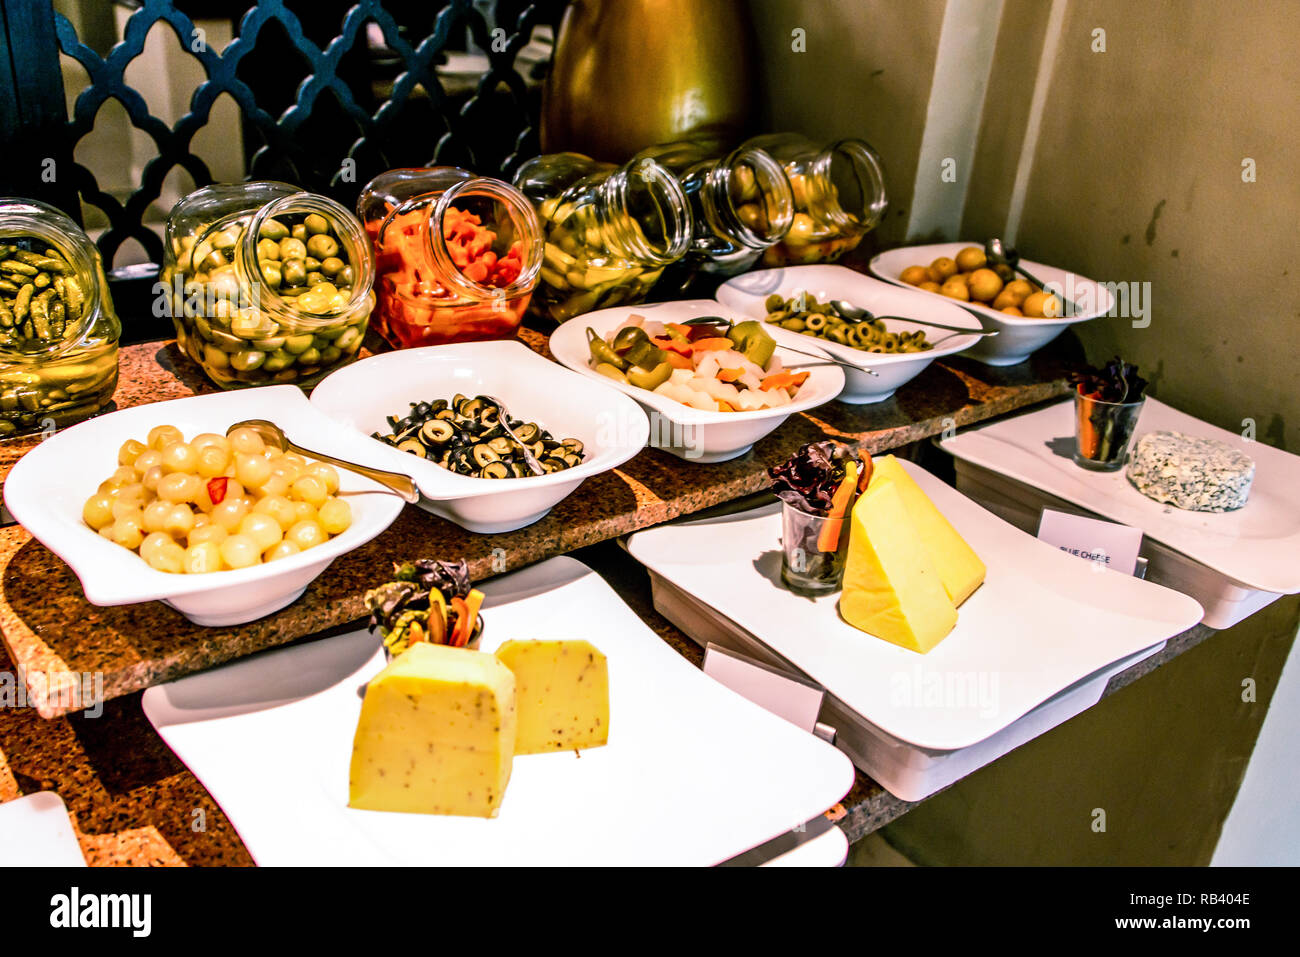 Vielzahl Essen am Tisch, Wein, Snacks, Oliven, Käse und andere Vorspeise, italienische Antipasti auf Platte Stockfoto